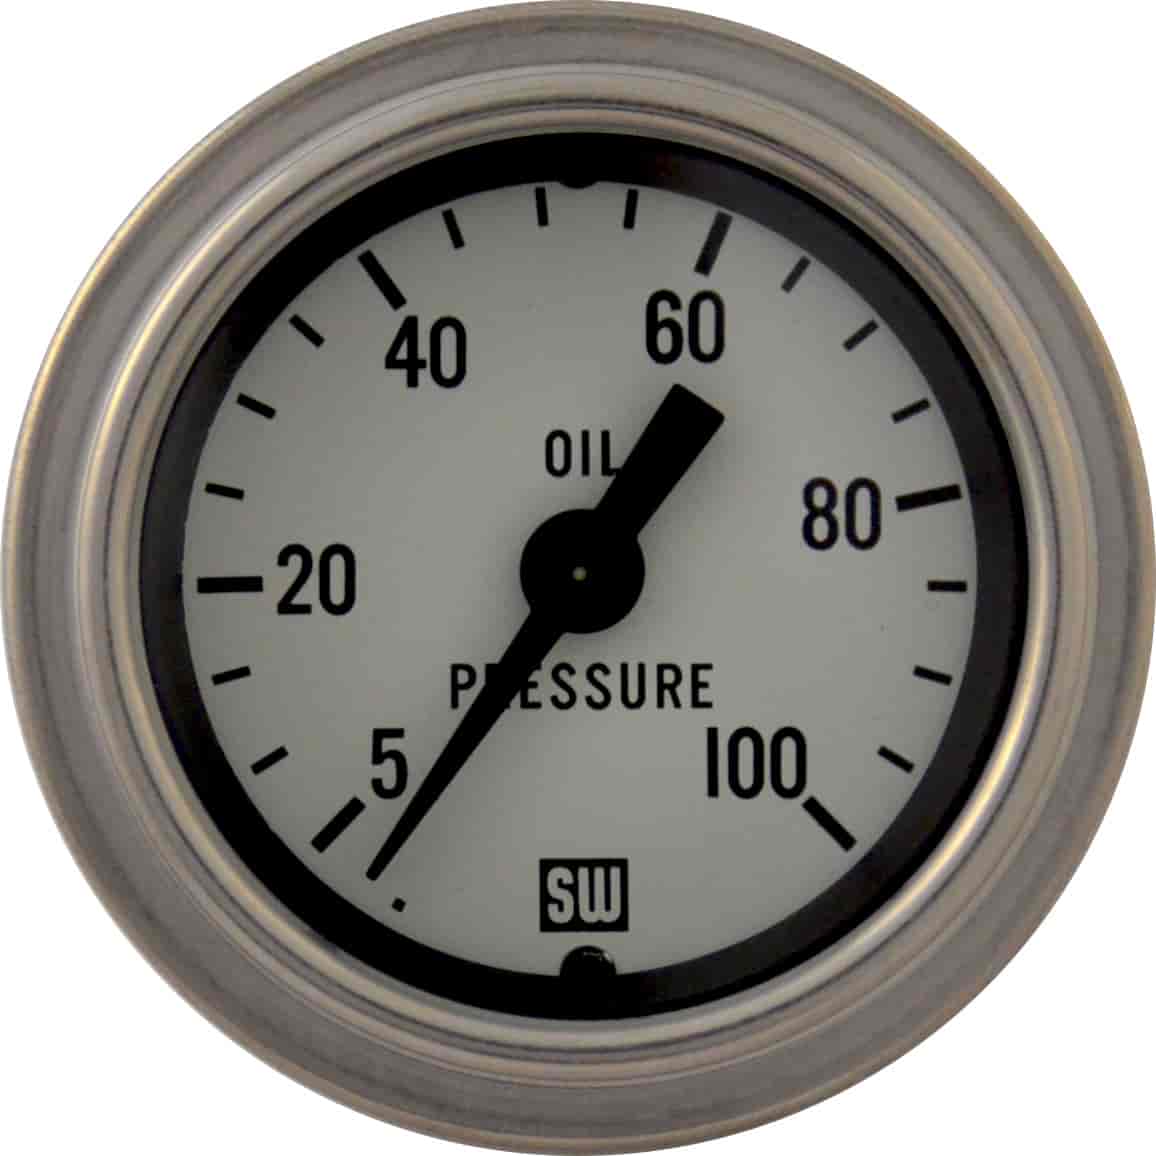 Deluxe-Series Oil Pressure Gauge, 2-1/16 in. Diameter, Mechanical